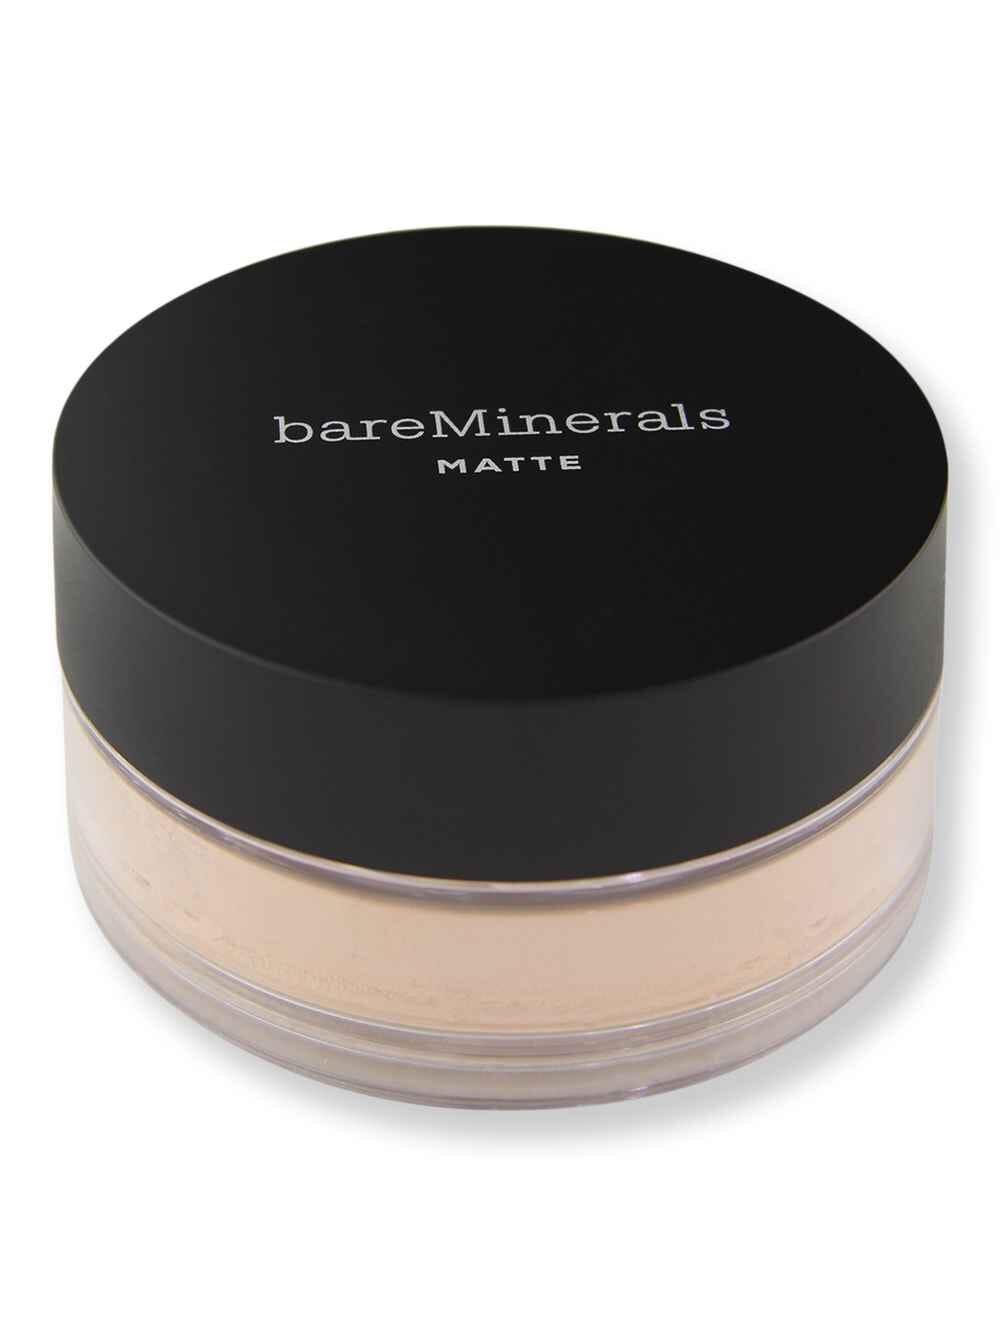 Bareminerals Bareminerals Loose Powder Matte Foundation SPF 15 Light Beige 09 0.21 oz6 g Tinted Moisturizers & Foundations 